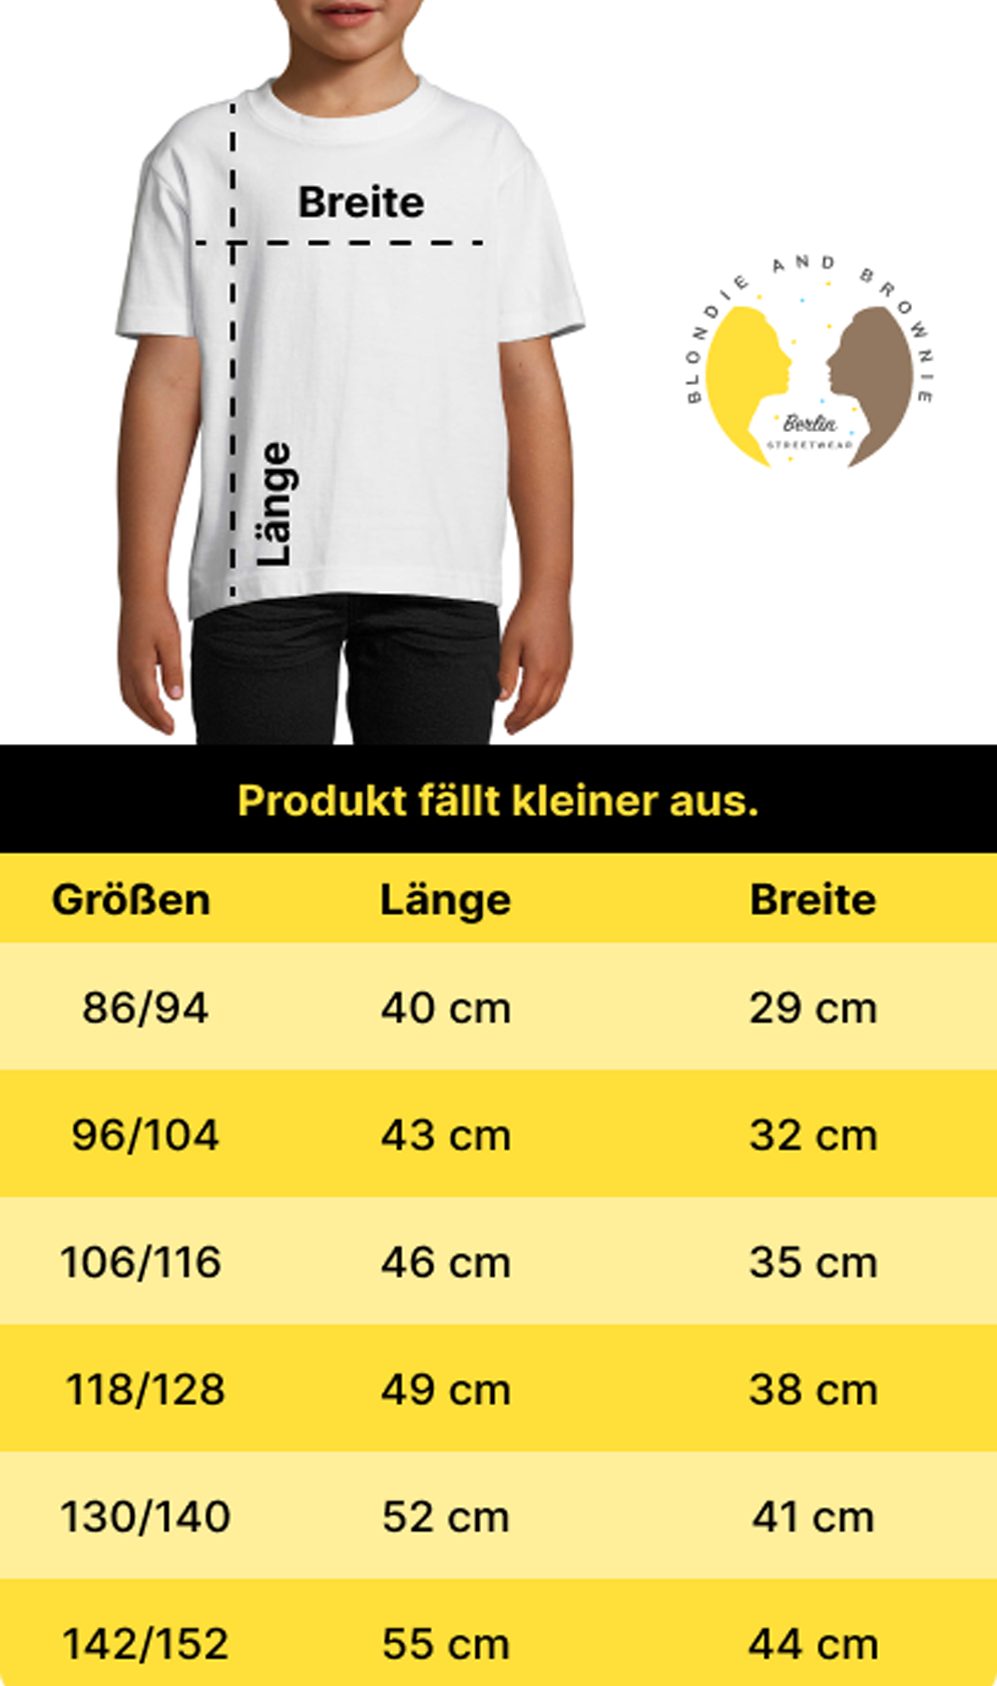 Blondie Meister Sport Germany EM Trikot Kinder T-Shirt Brownie & Weiss/Schwarz Fußball Deutschland